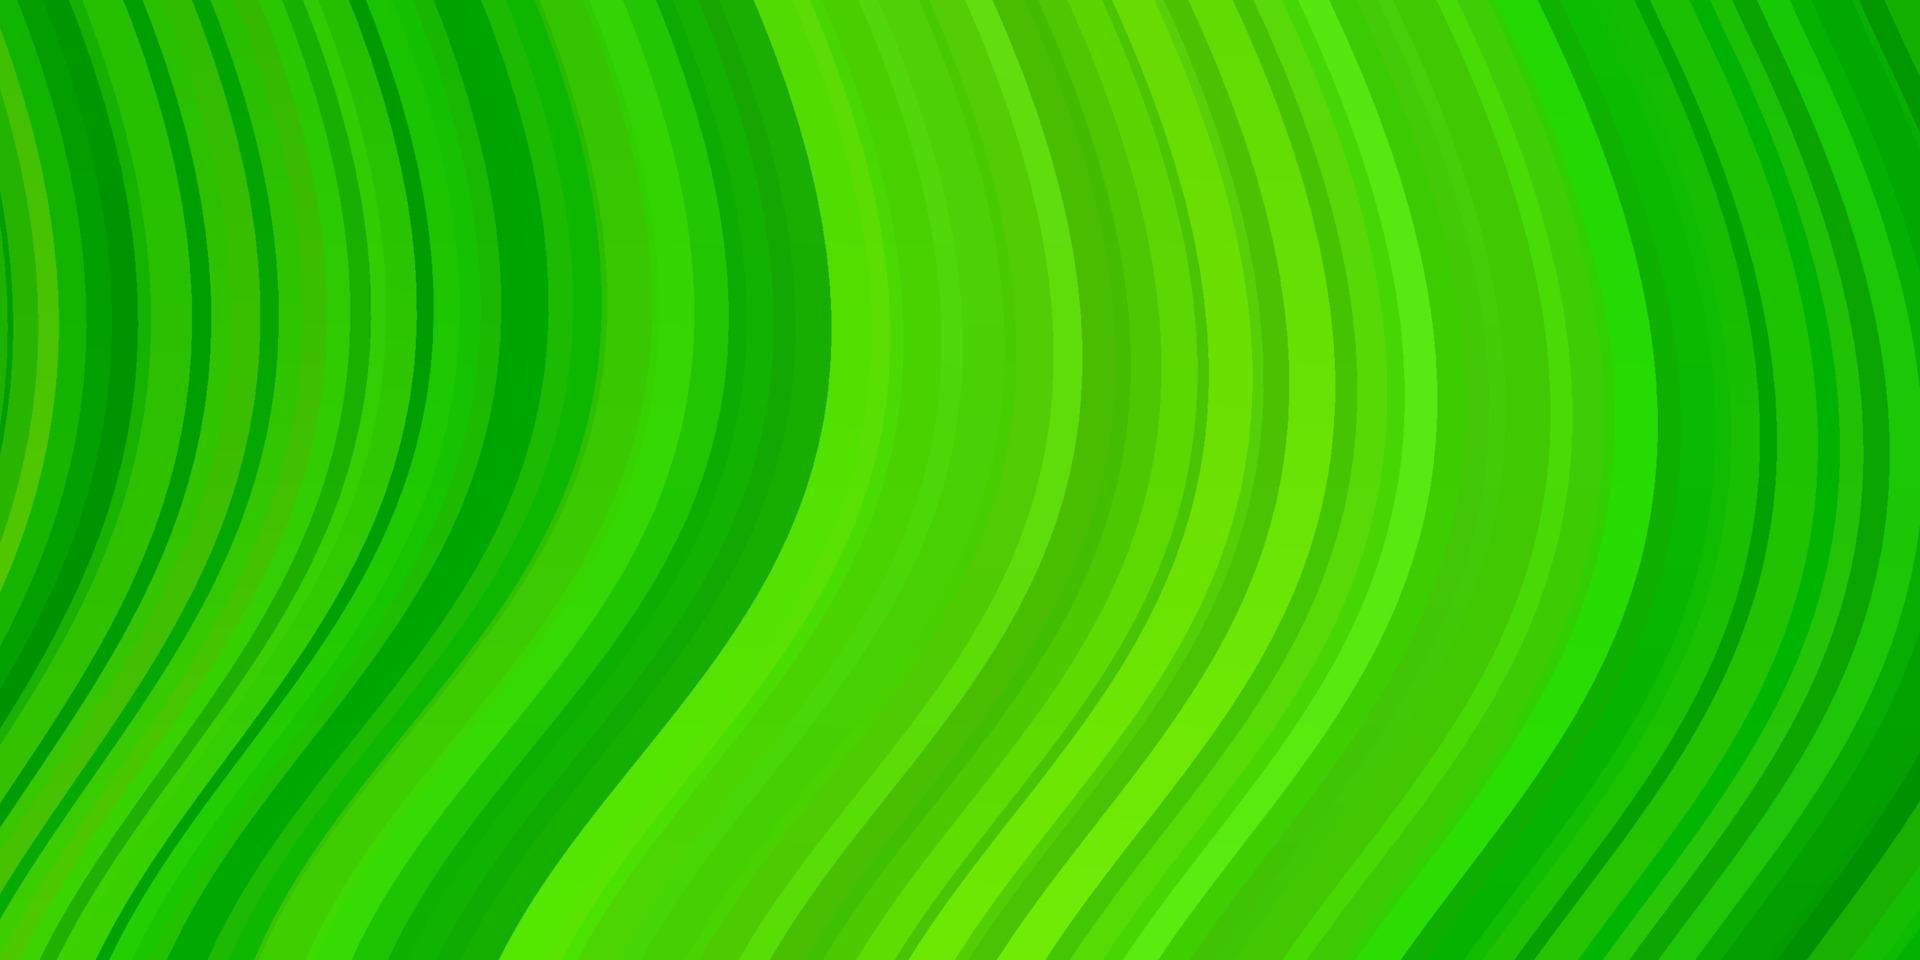 patrón de vector verde claro con curvas.